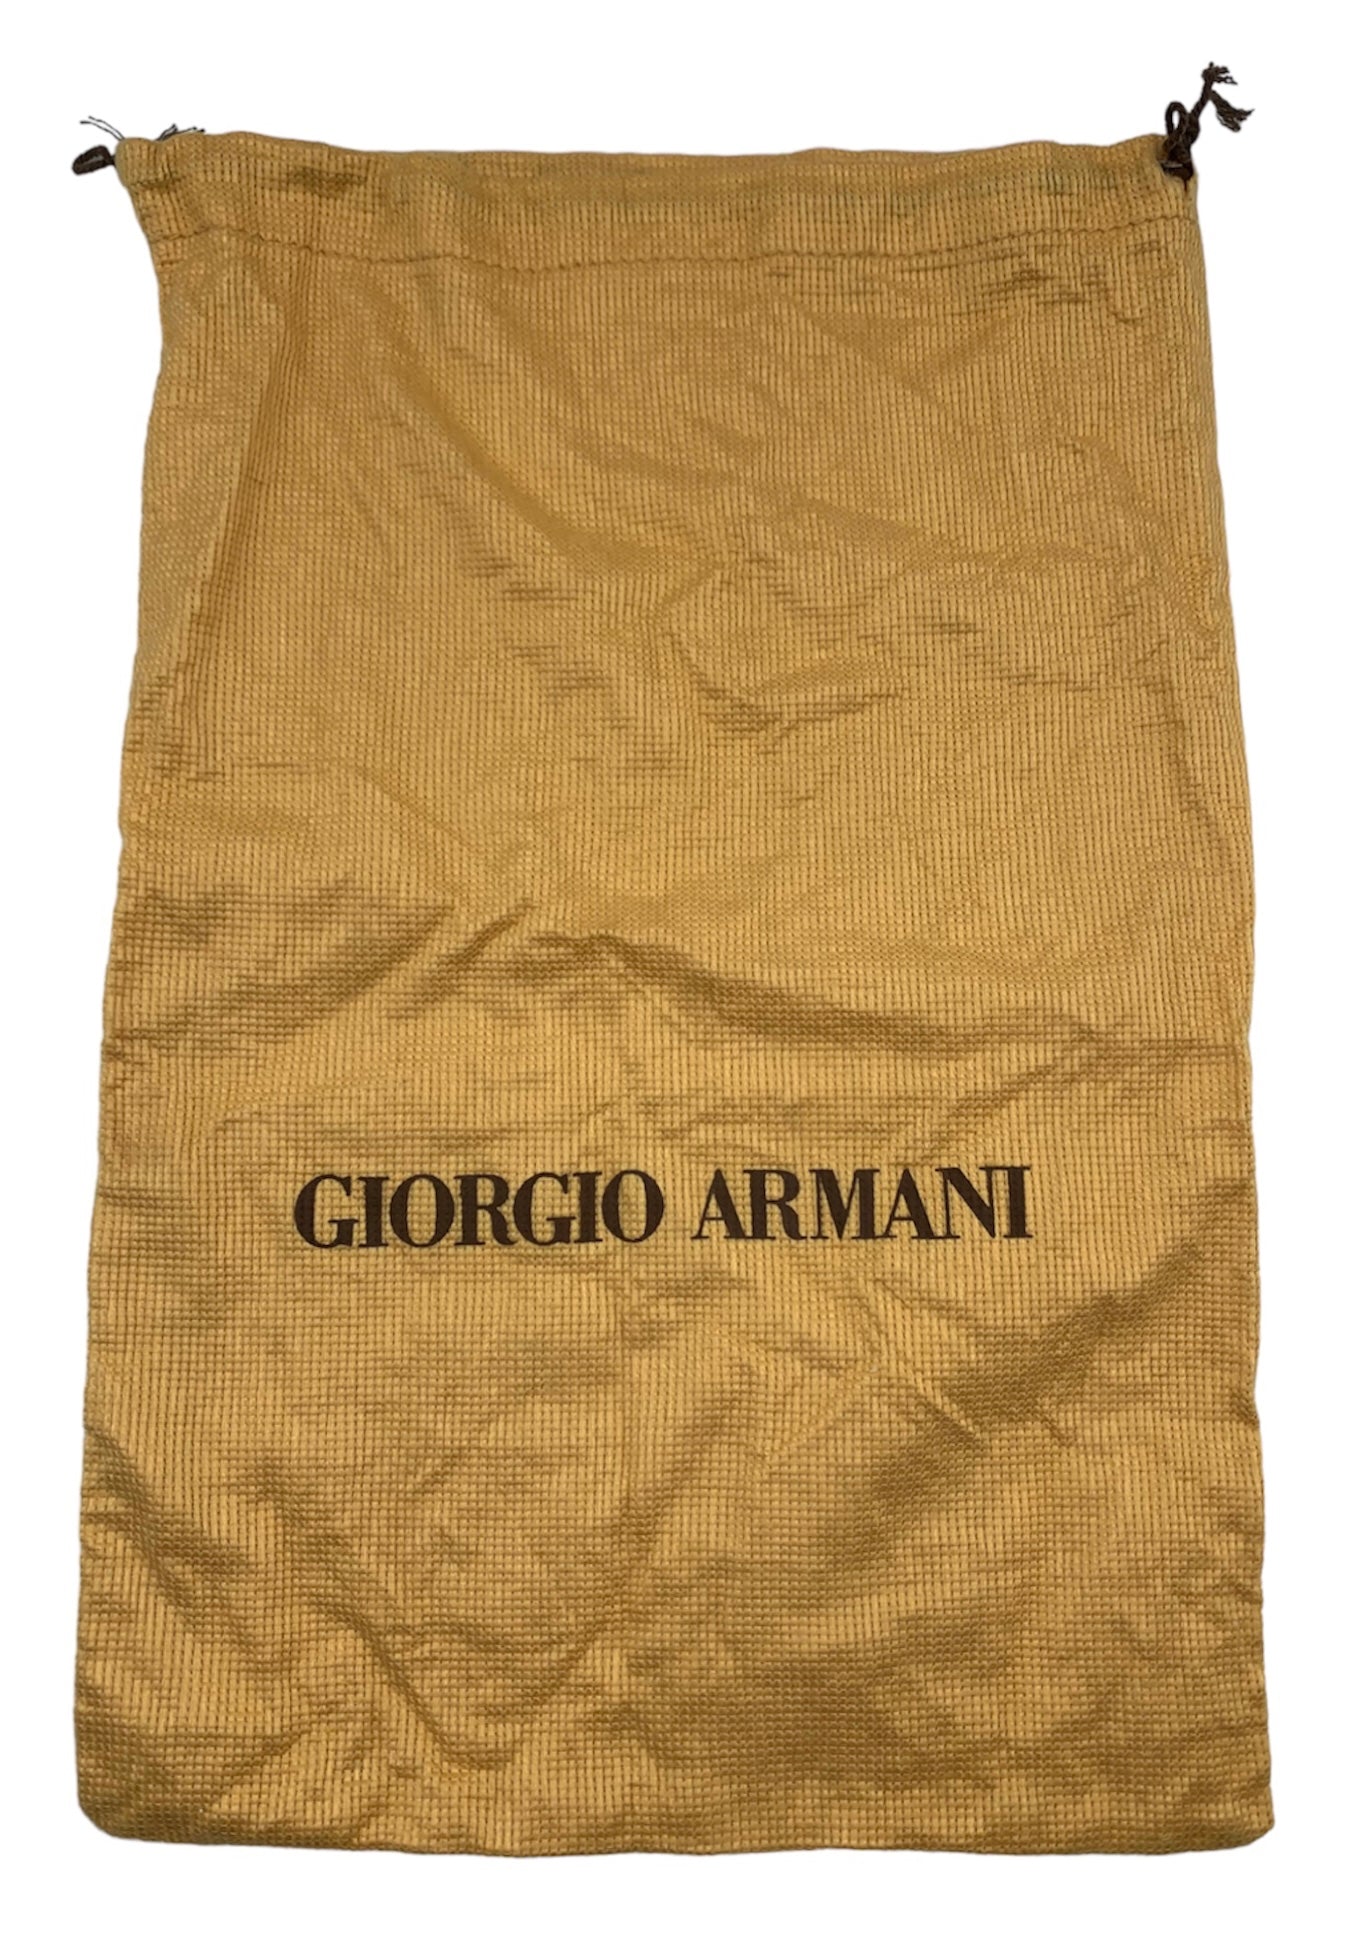 Giorgio Armani 2000s  Ivory  Beaded Fringe Purse DUST BAG 4 of 5